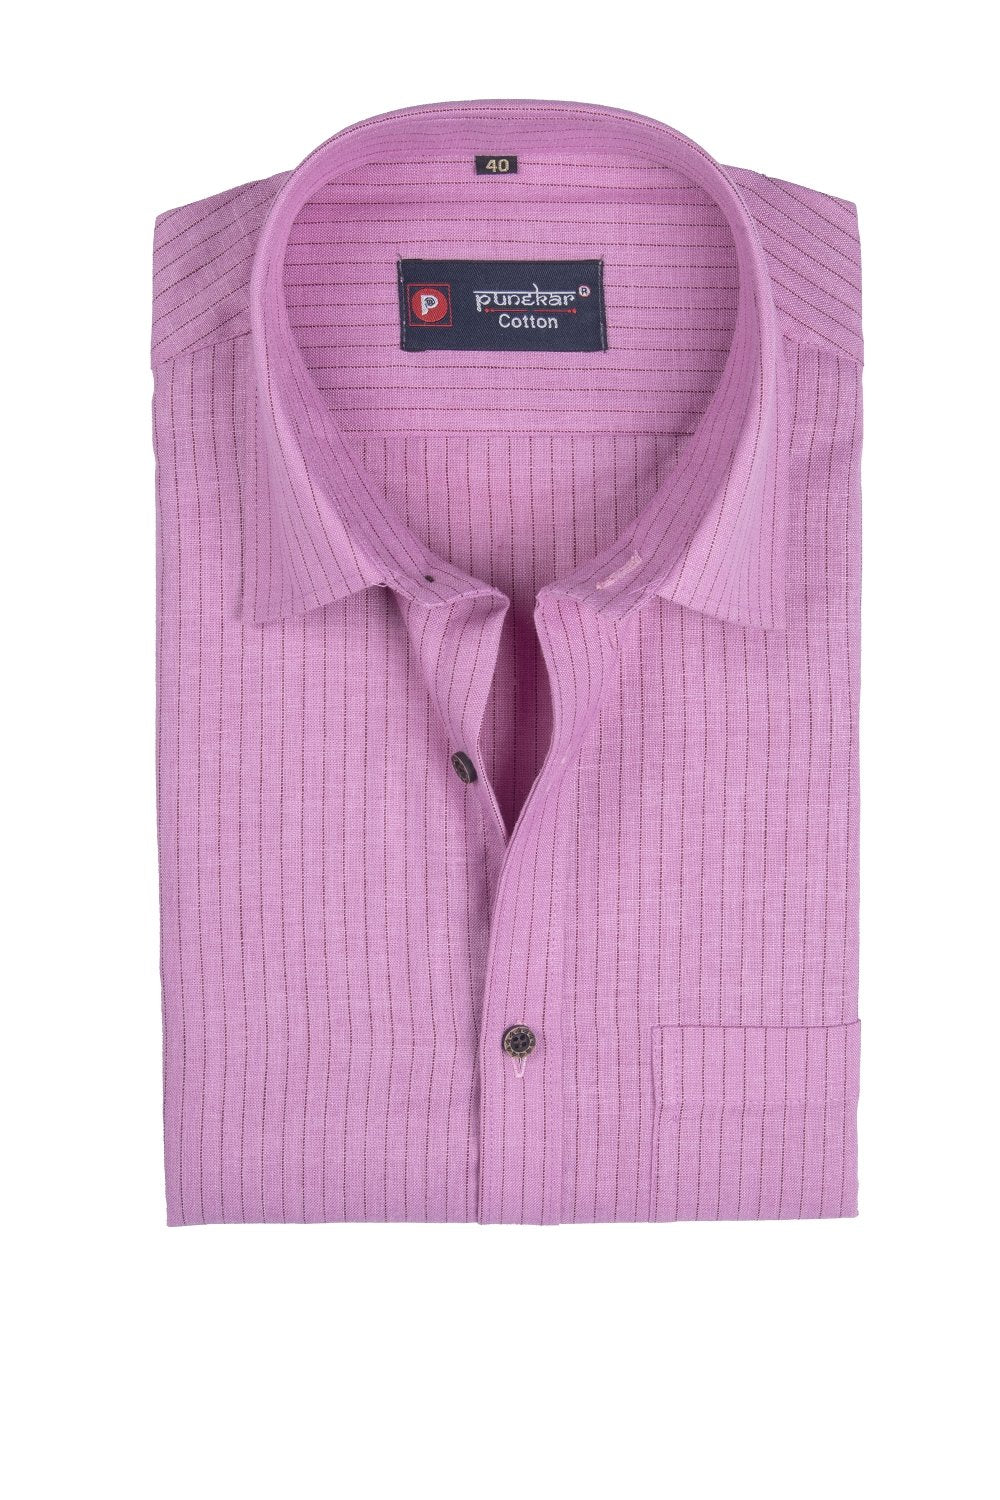 Punekar Cotton Pink Color Linning Criss Cross Woven Cotton Shirt for Men&